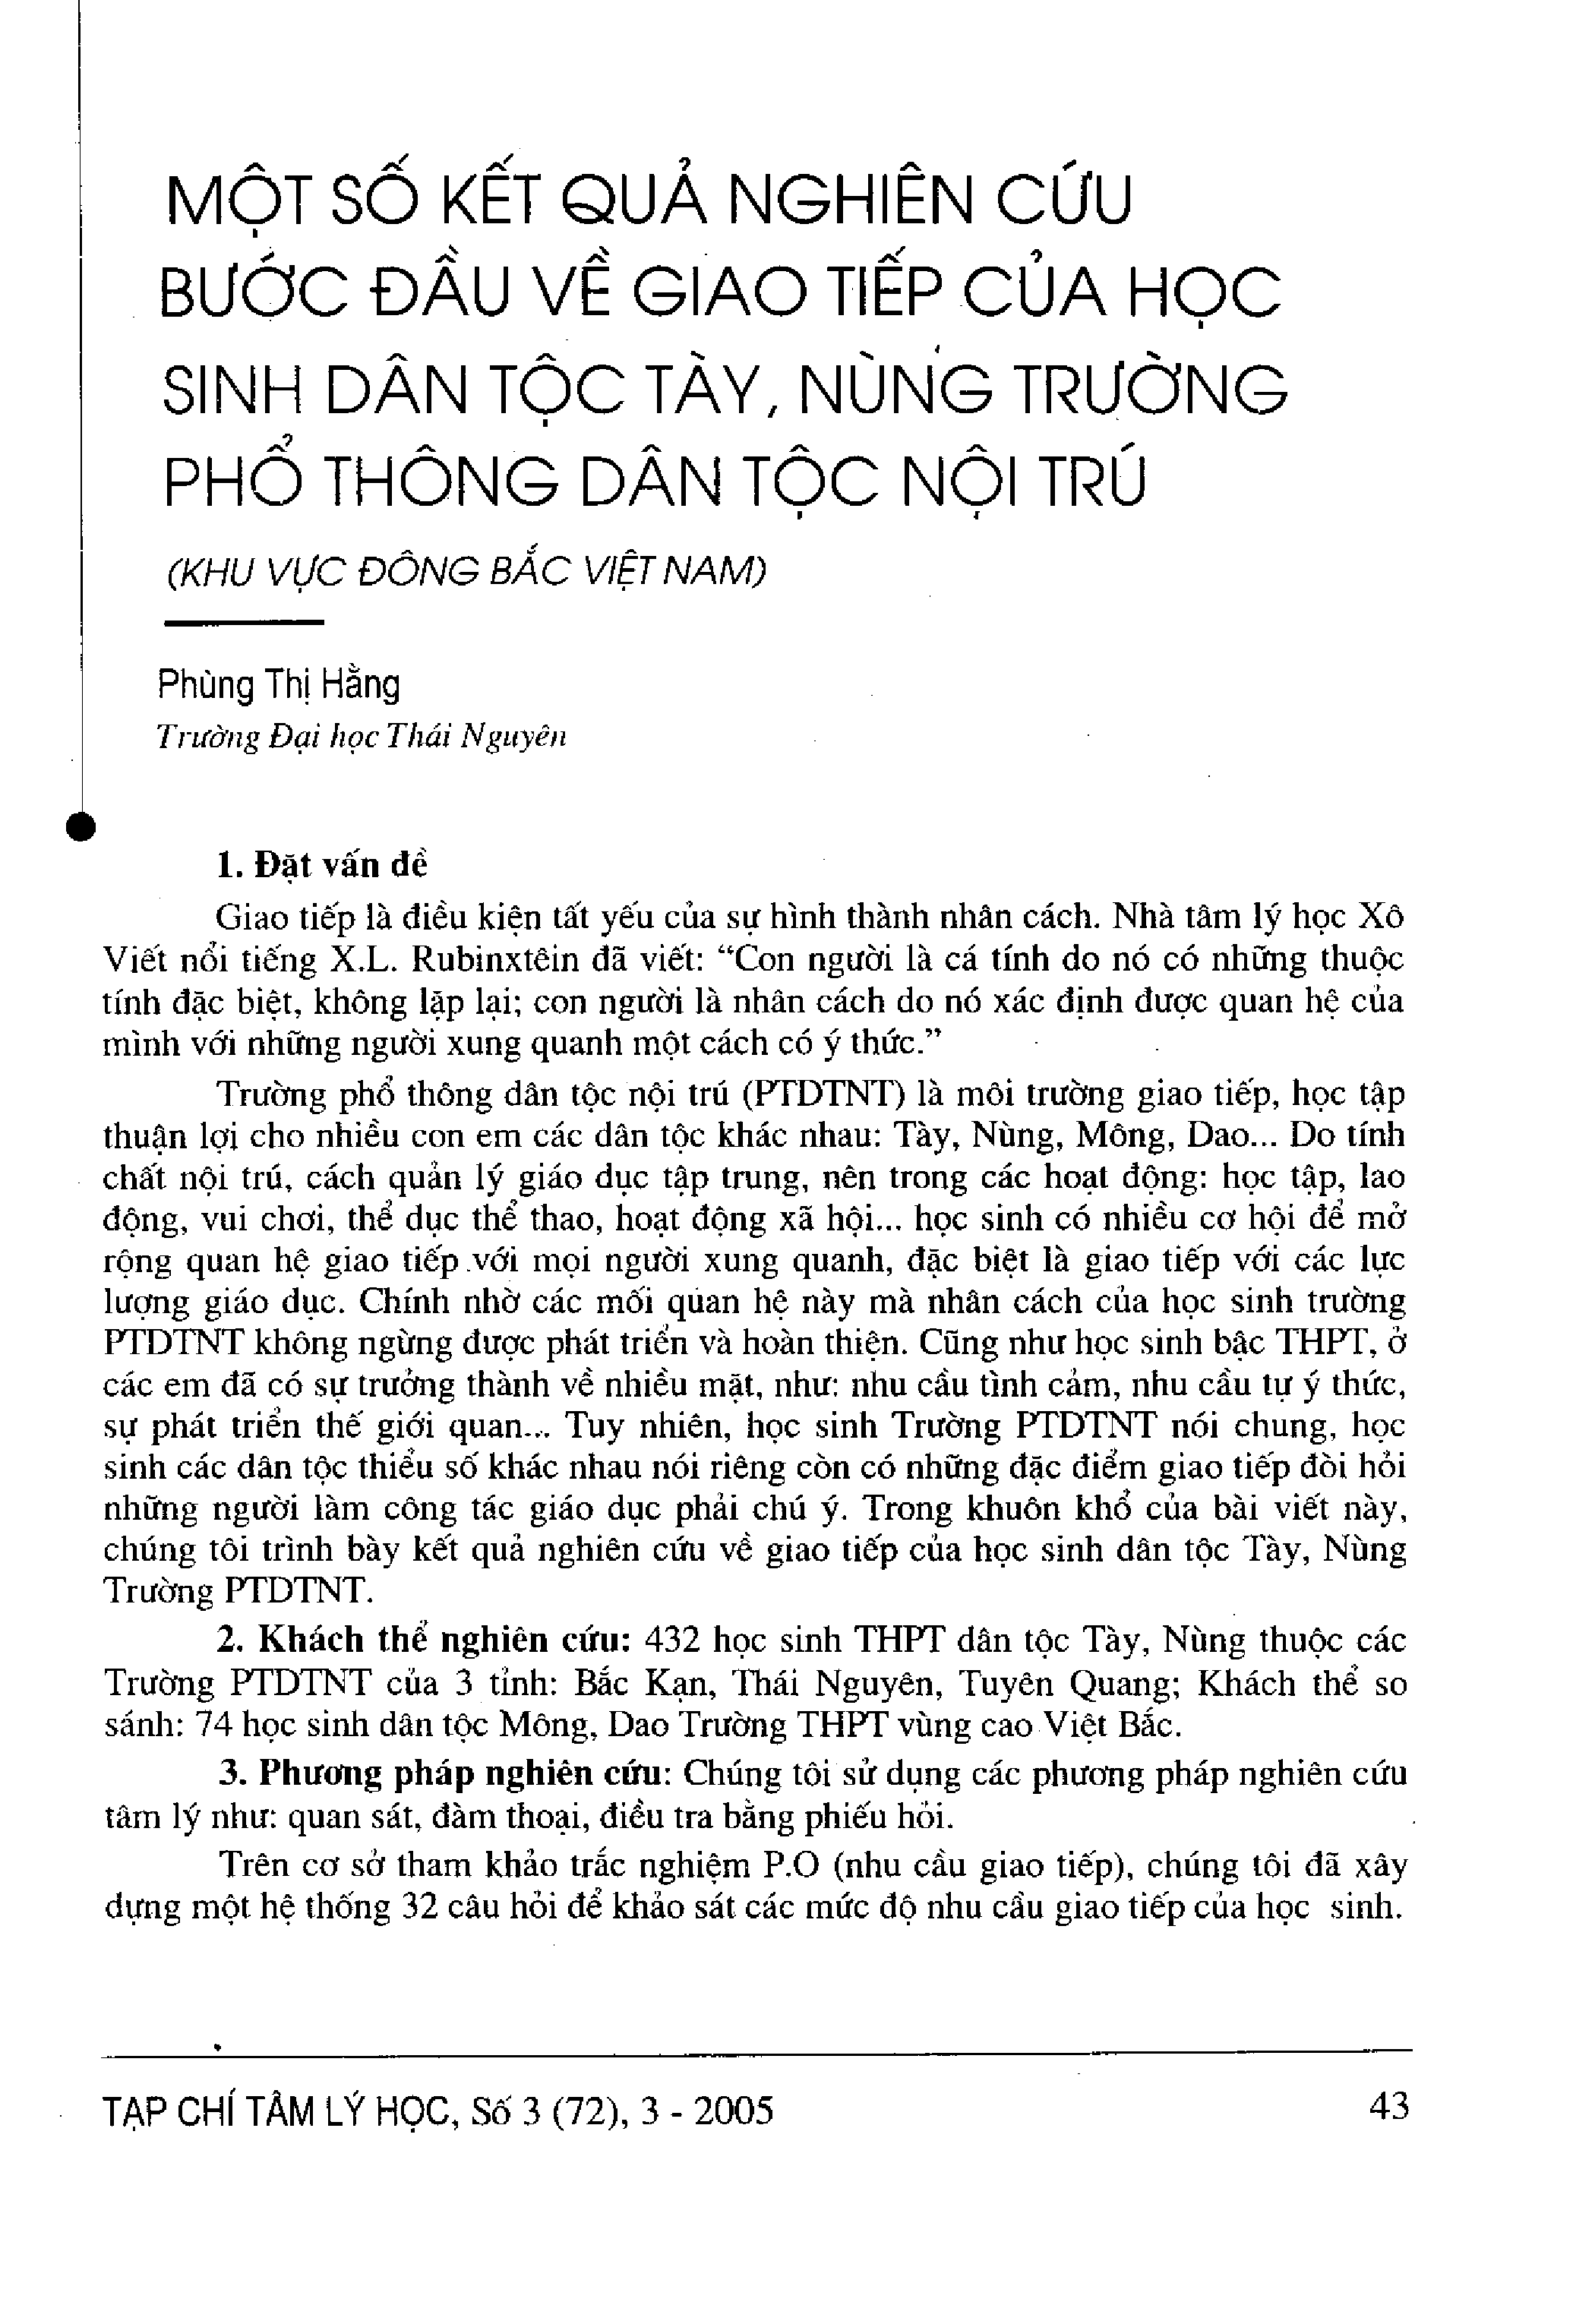 Một số kết quả nghiên cứu bước đầu về giao tiếp của học sinh dân tộc Tày, Nùng trường phổ thông dân tộc nội trú (khu vực Đông Bắc Việt Nam)